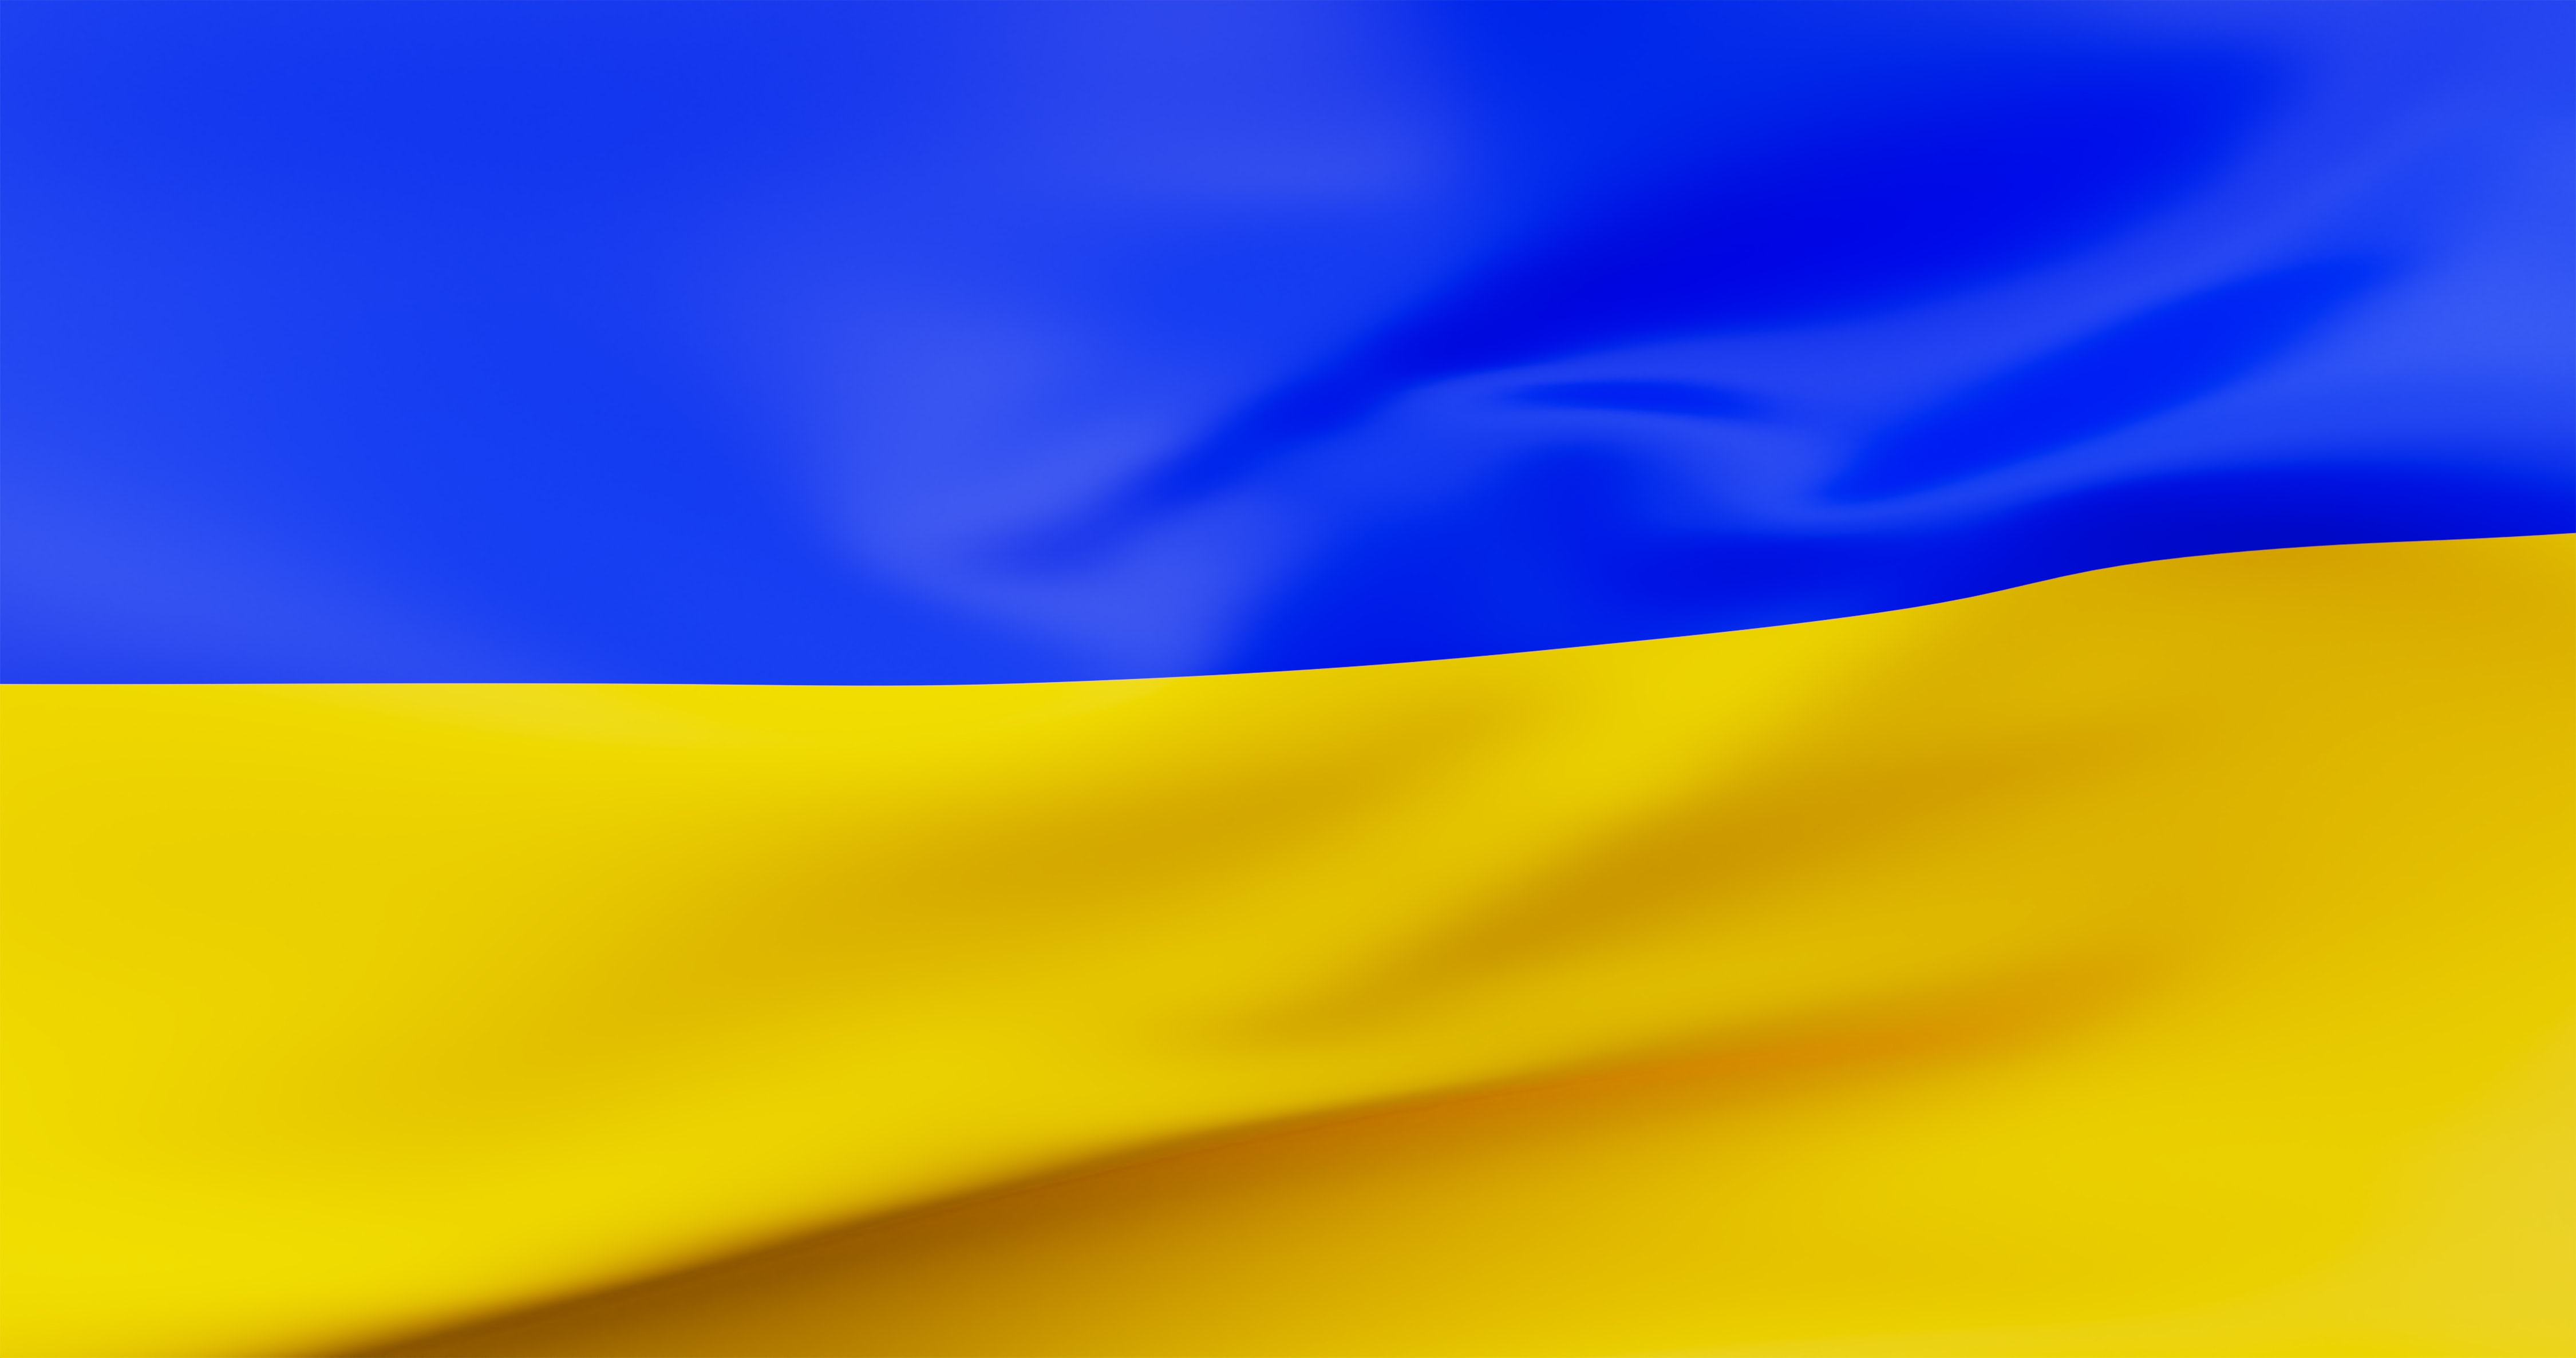 Invasion de l’Ukraine par la Russie : les réactions au sein du système européen d’enseignement supérieur